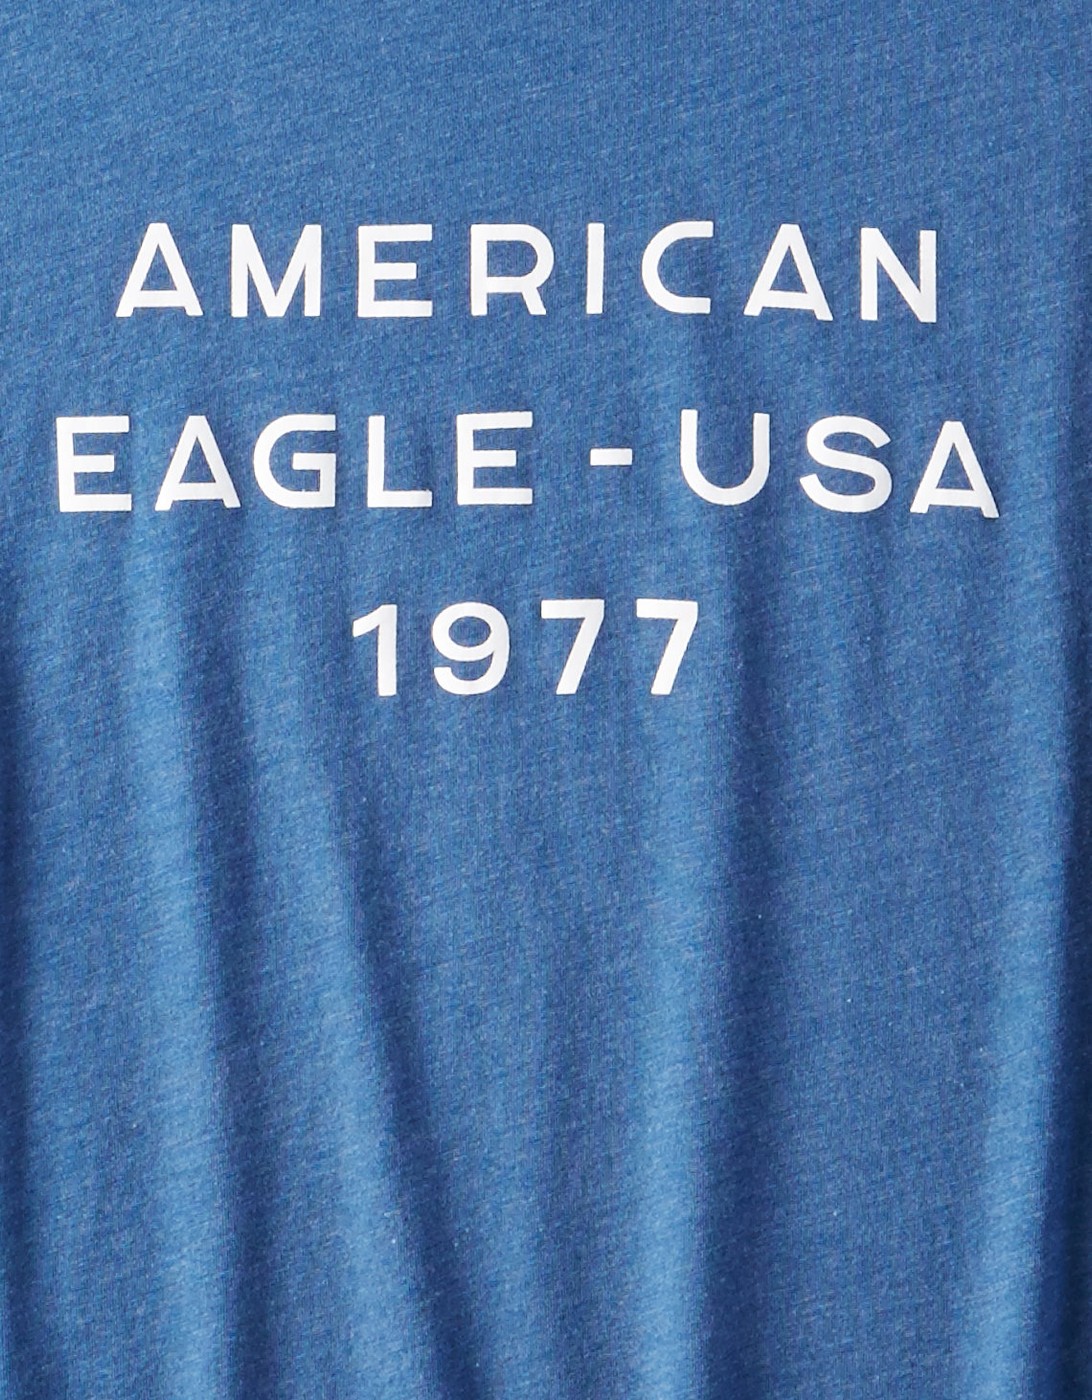 Футболка American Eagle, L, L